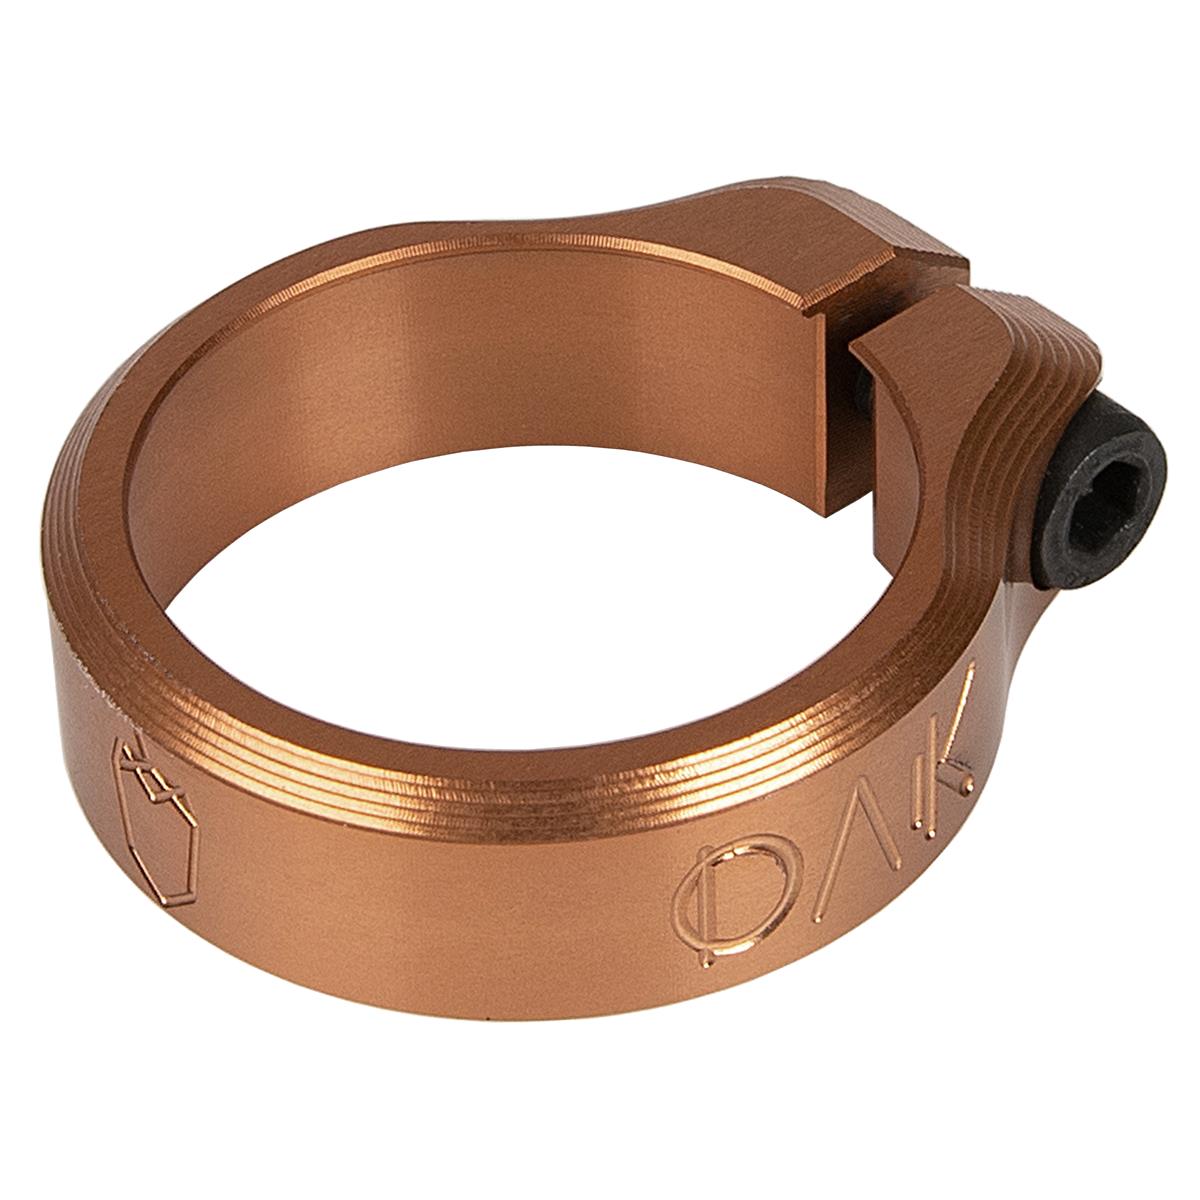 OAK Components Collier de Selle Orbit Cuivre, 34.9 mm / 36.4 mm / 38.6 mm